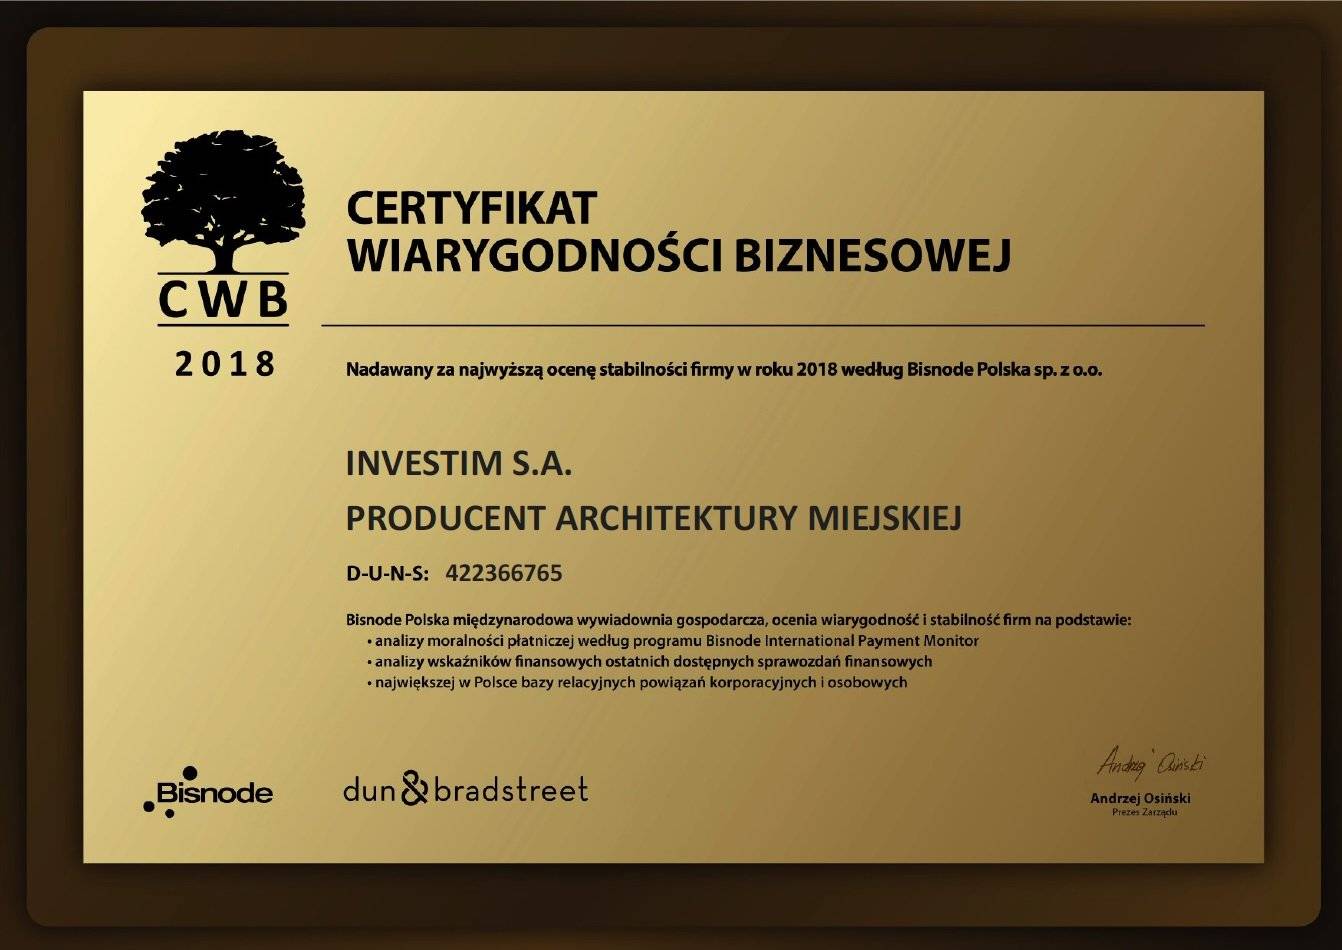 certyfikat-wiarygodnosci-biznesowej-2018_0_large.jpg